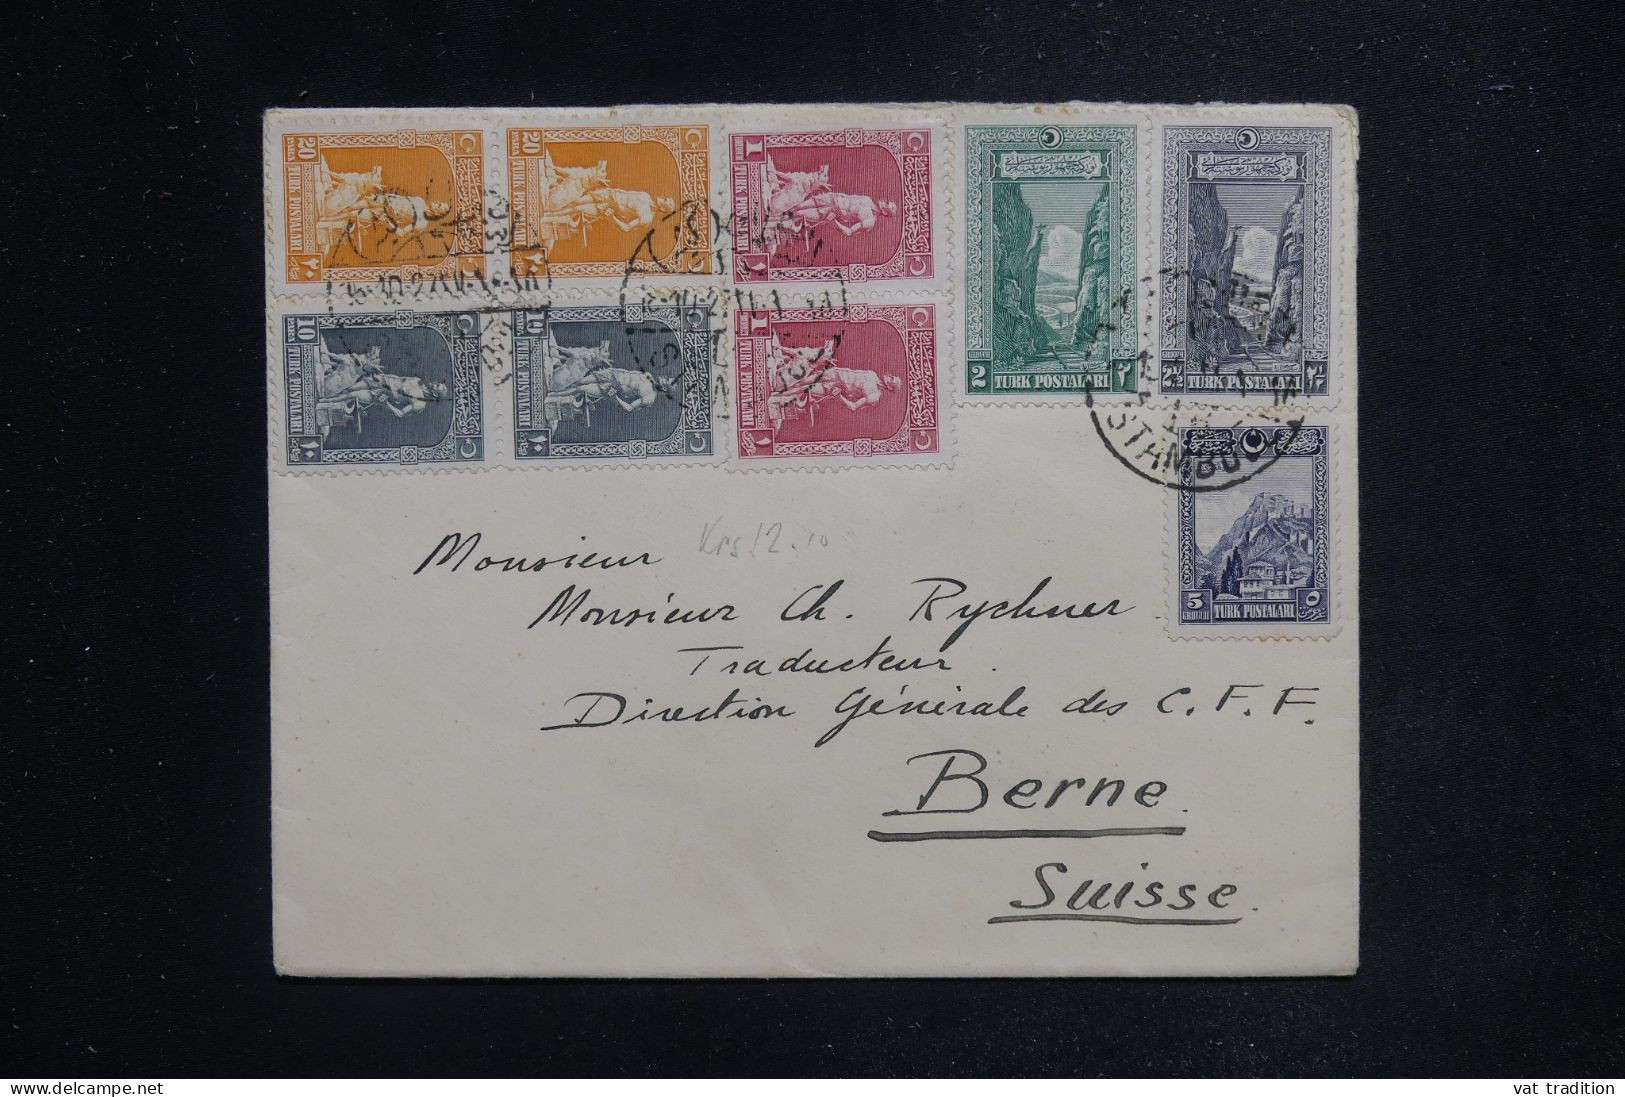 TURQUIE - Enveloppe De Constantinople Pour La Suisse En 1927 - L 144326 - Covers & Documents